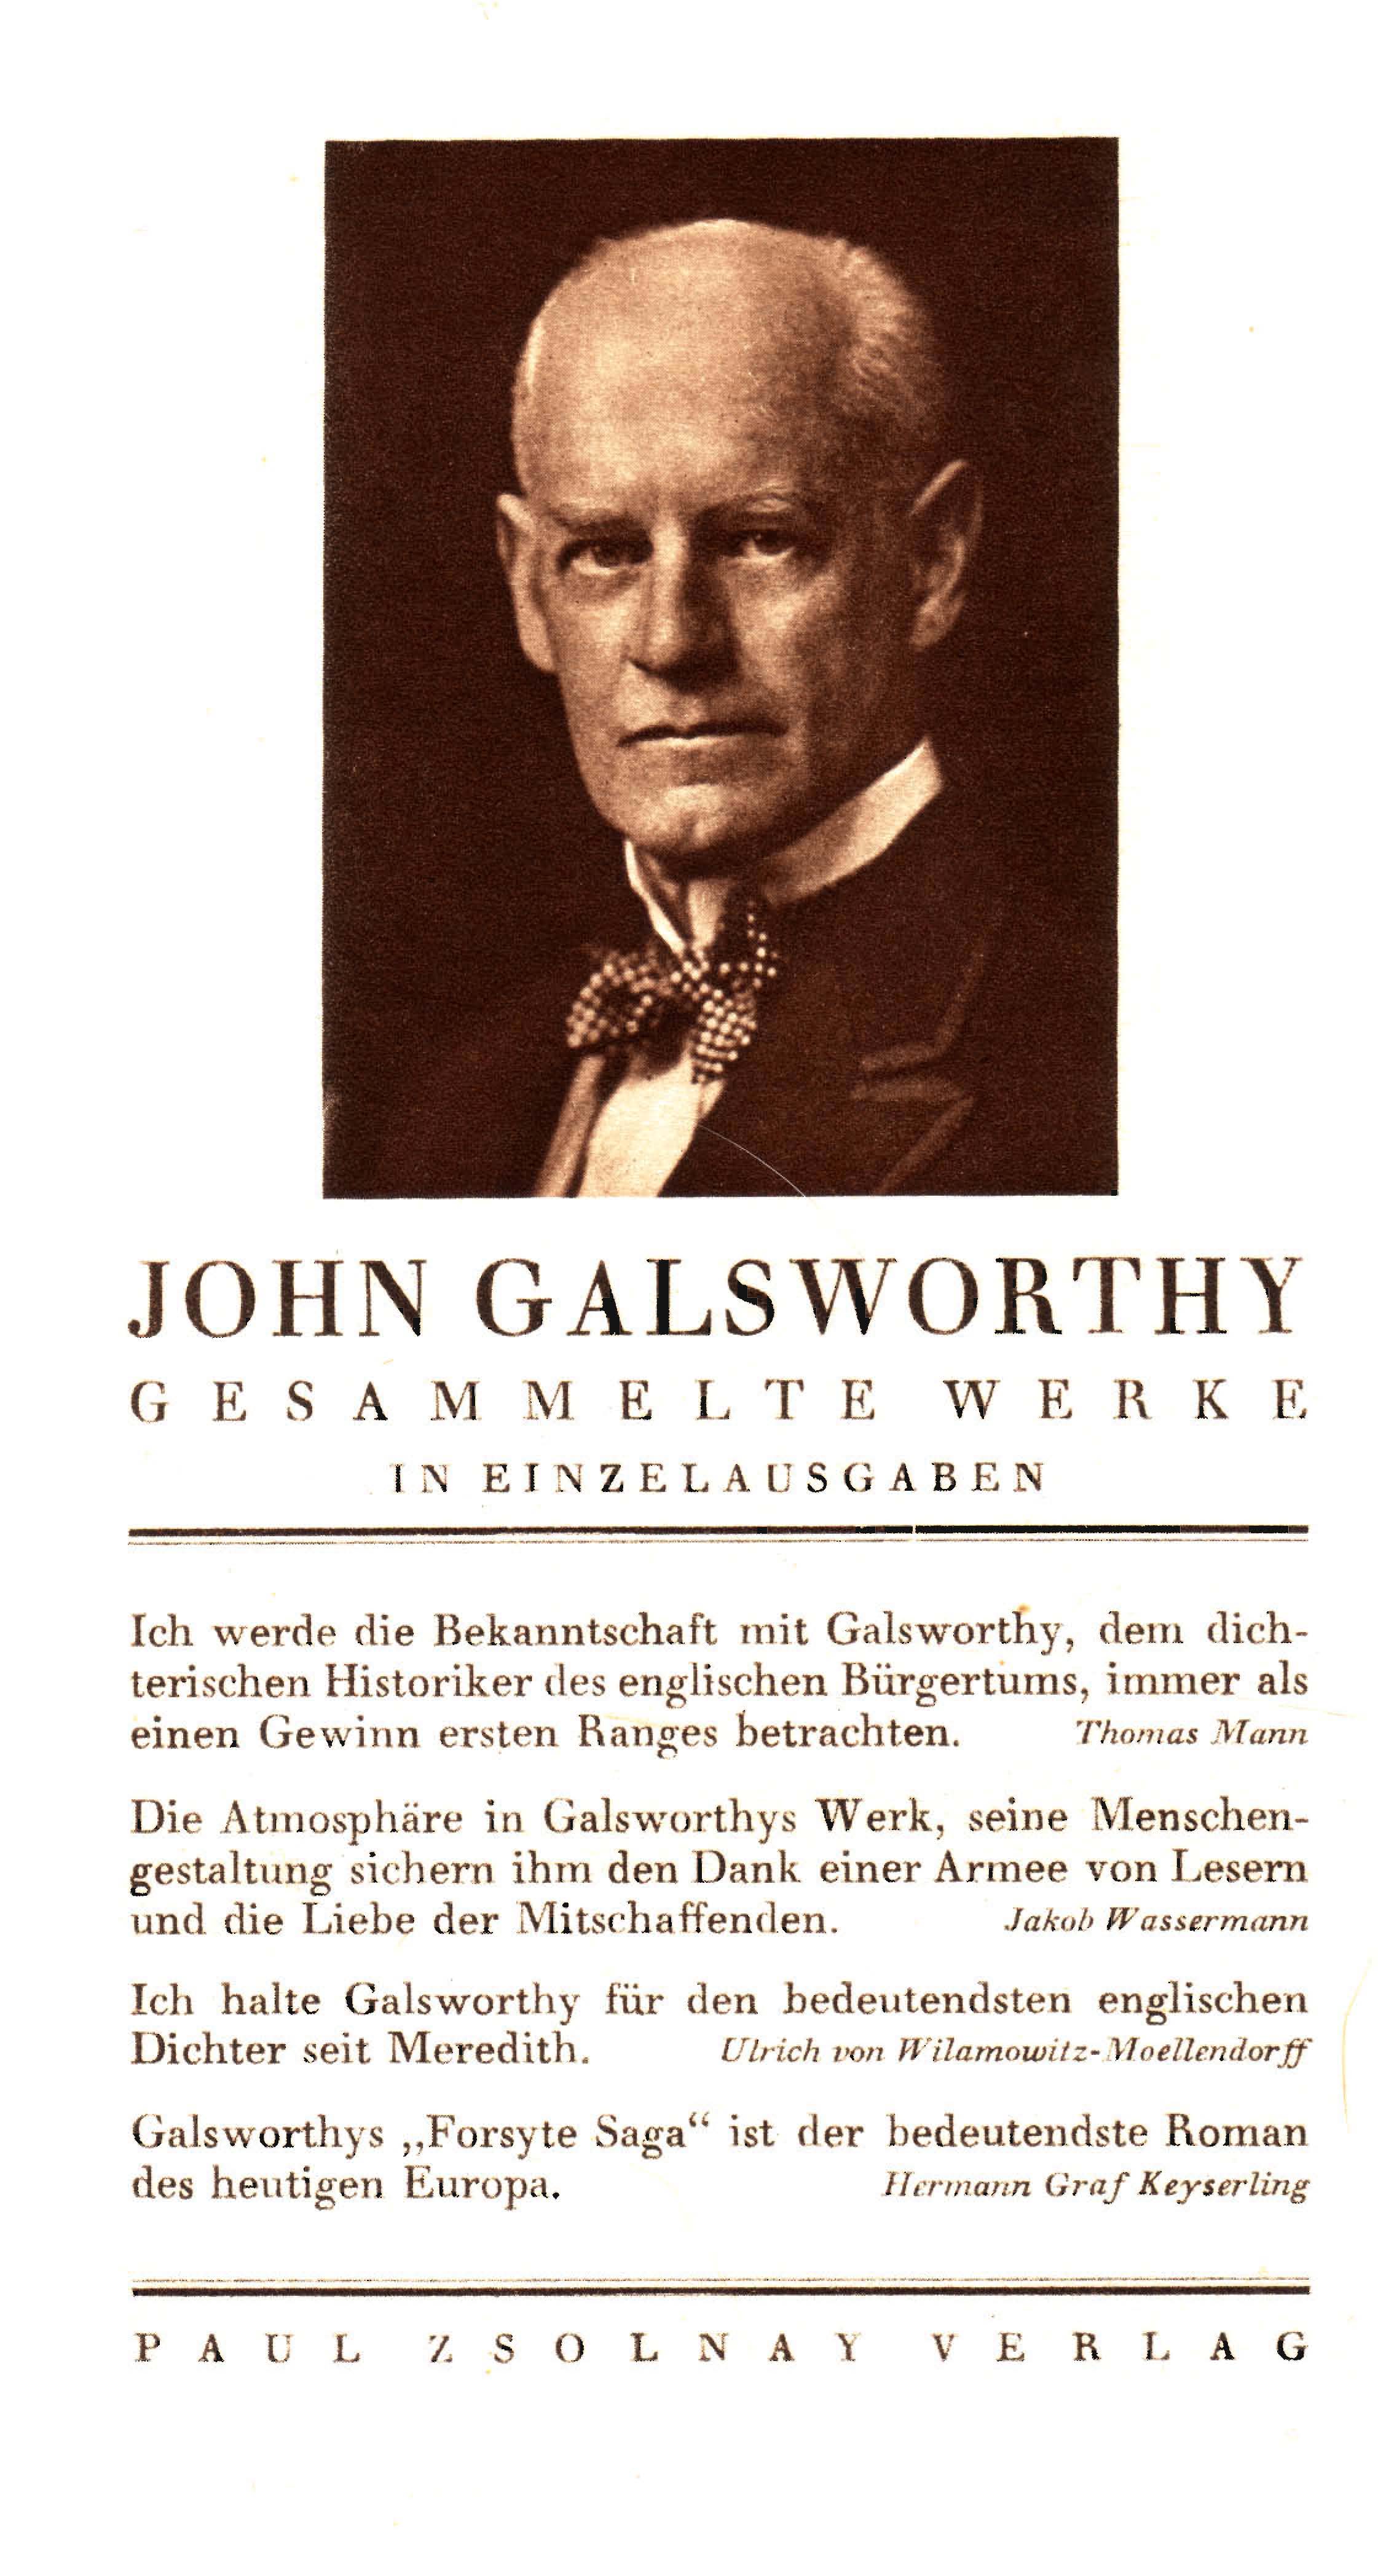 Sonderprospekt für J. Galsworthys Gesammelte Werke (1930)